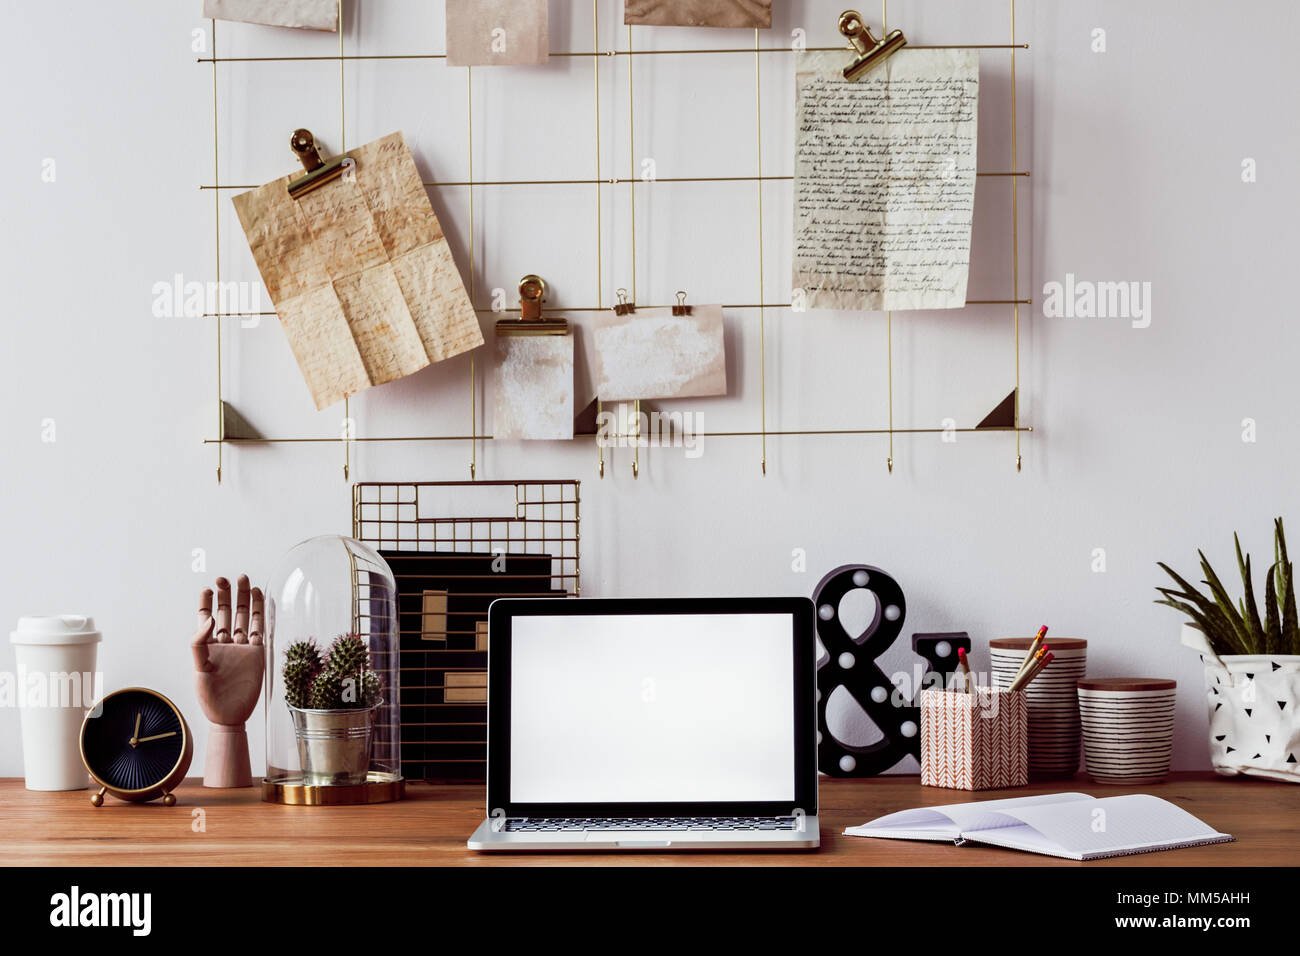 Laptop, cactus, decorazioni e portatile su una scrivania in legno